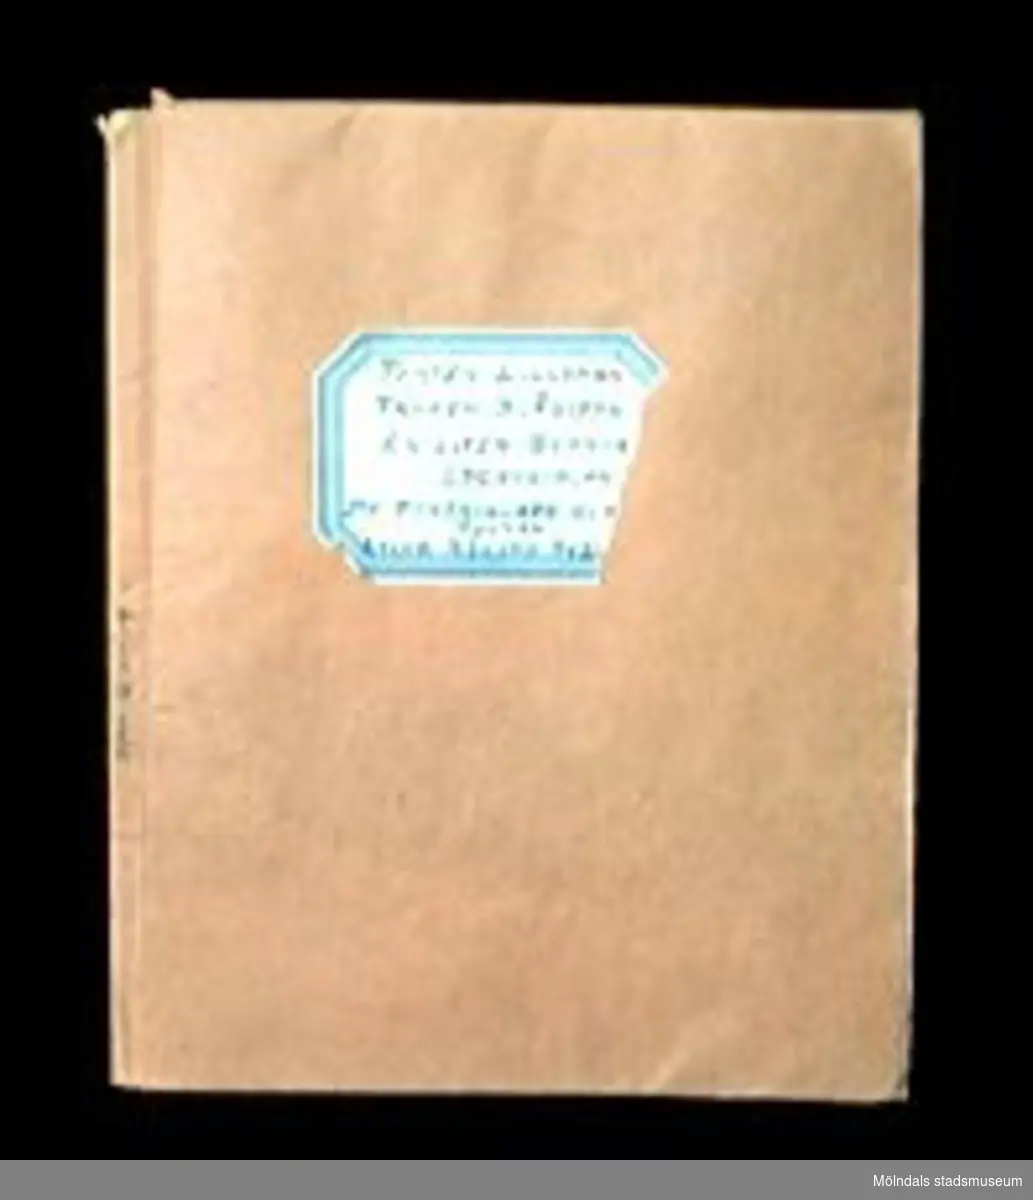 Tomtesagor och andra sagor av Gerda Ghobé, illustrerade av Maja Synnergren, Gbg, 1934. 15 sidor. Innehåller sagorna: "Tomten Lilleman", "Fröken Blåsippa", "En liten slarva", "Lyckosvalan", "De förtrollade glasögonen" och "Lille Nisses äventyr". Häftet har ett omslag i beige papper, med en etikett med sagornas namn på. Märkt i bläck på kanten av utsidan med: Lille Nisses äventyr.